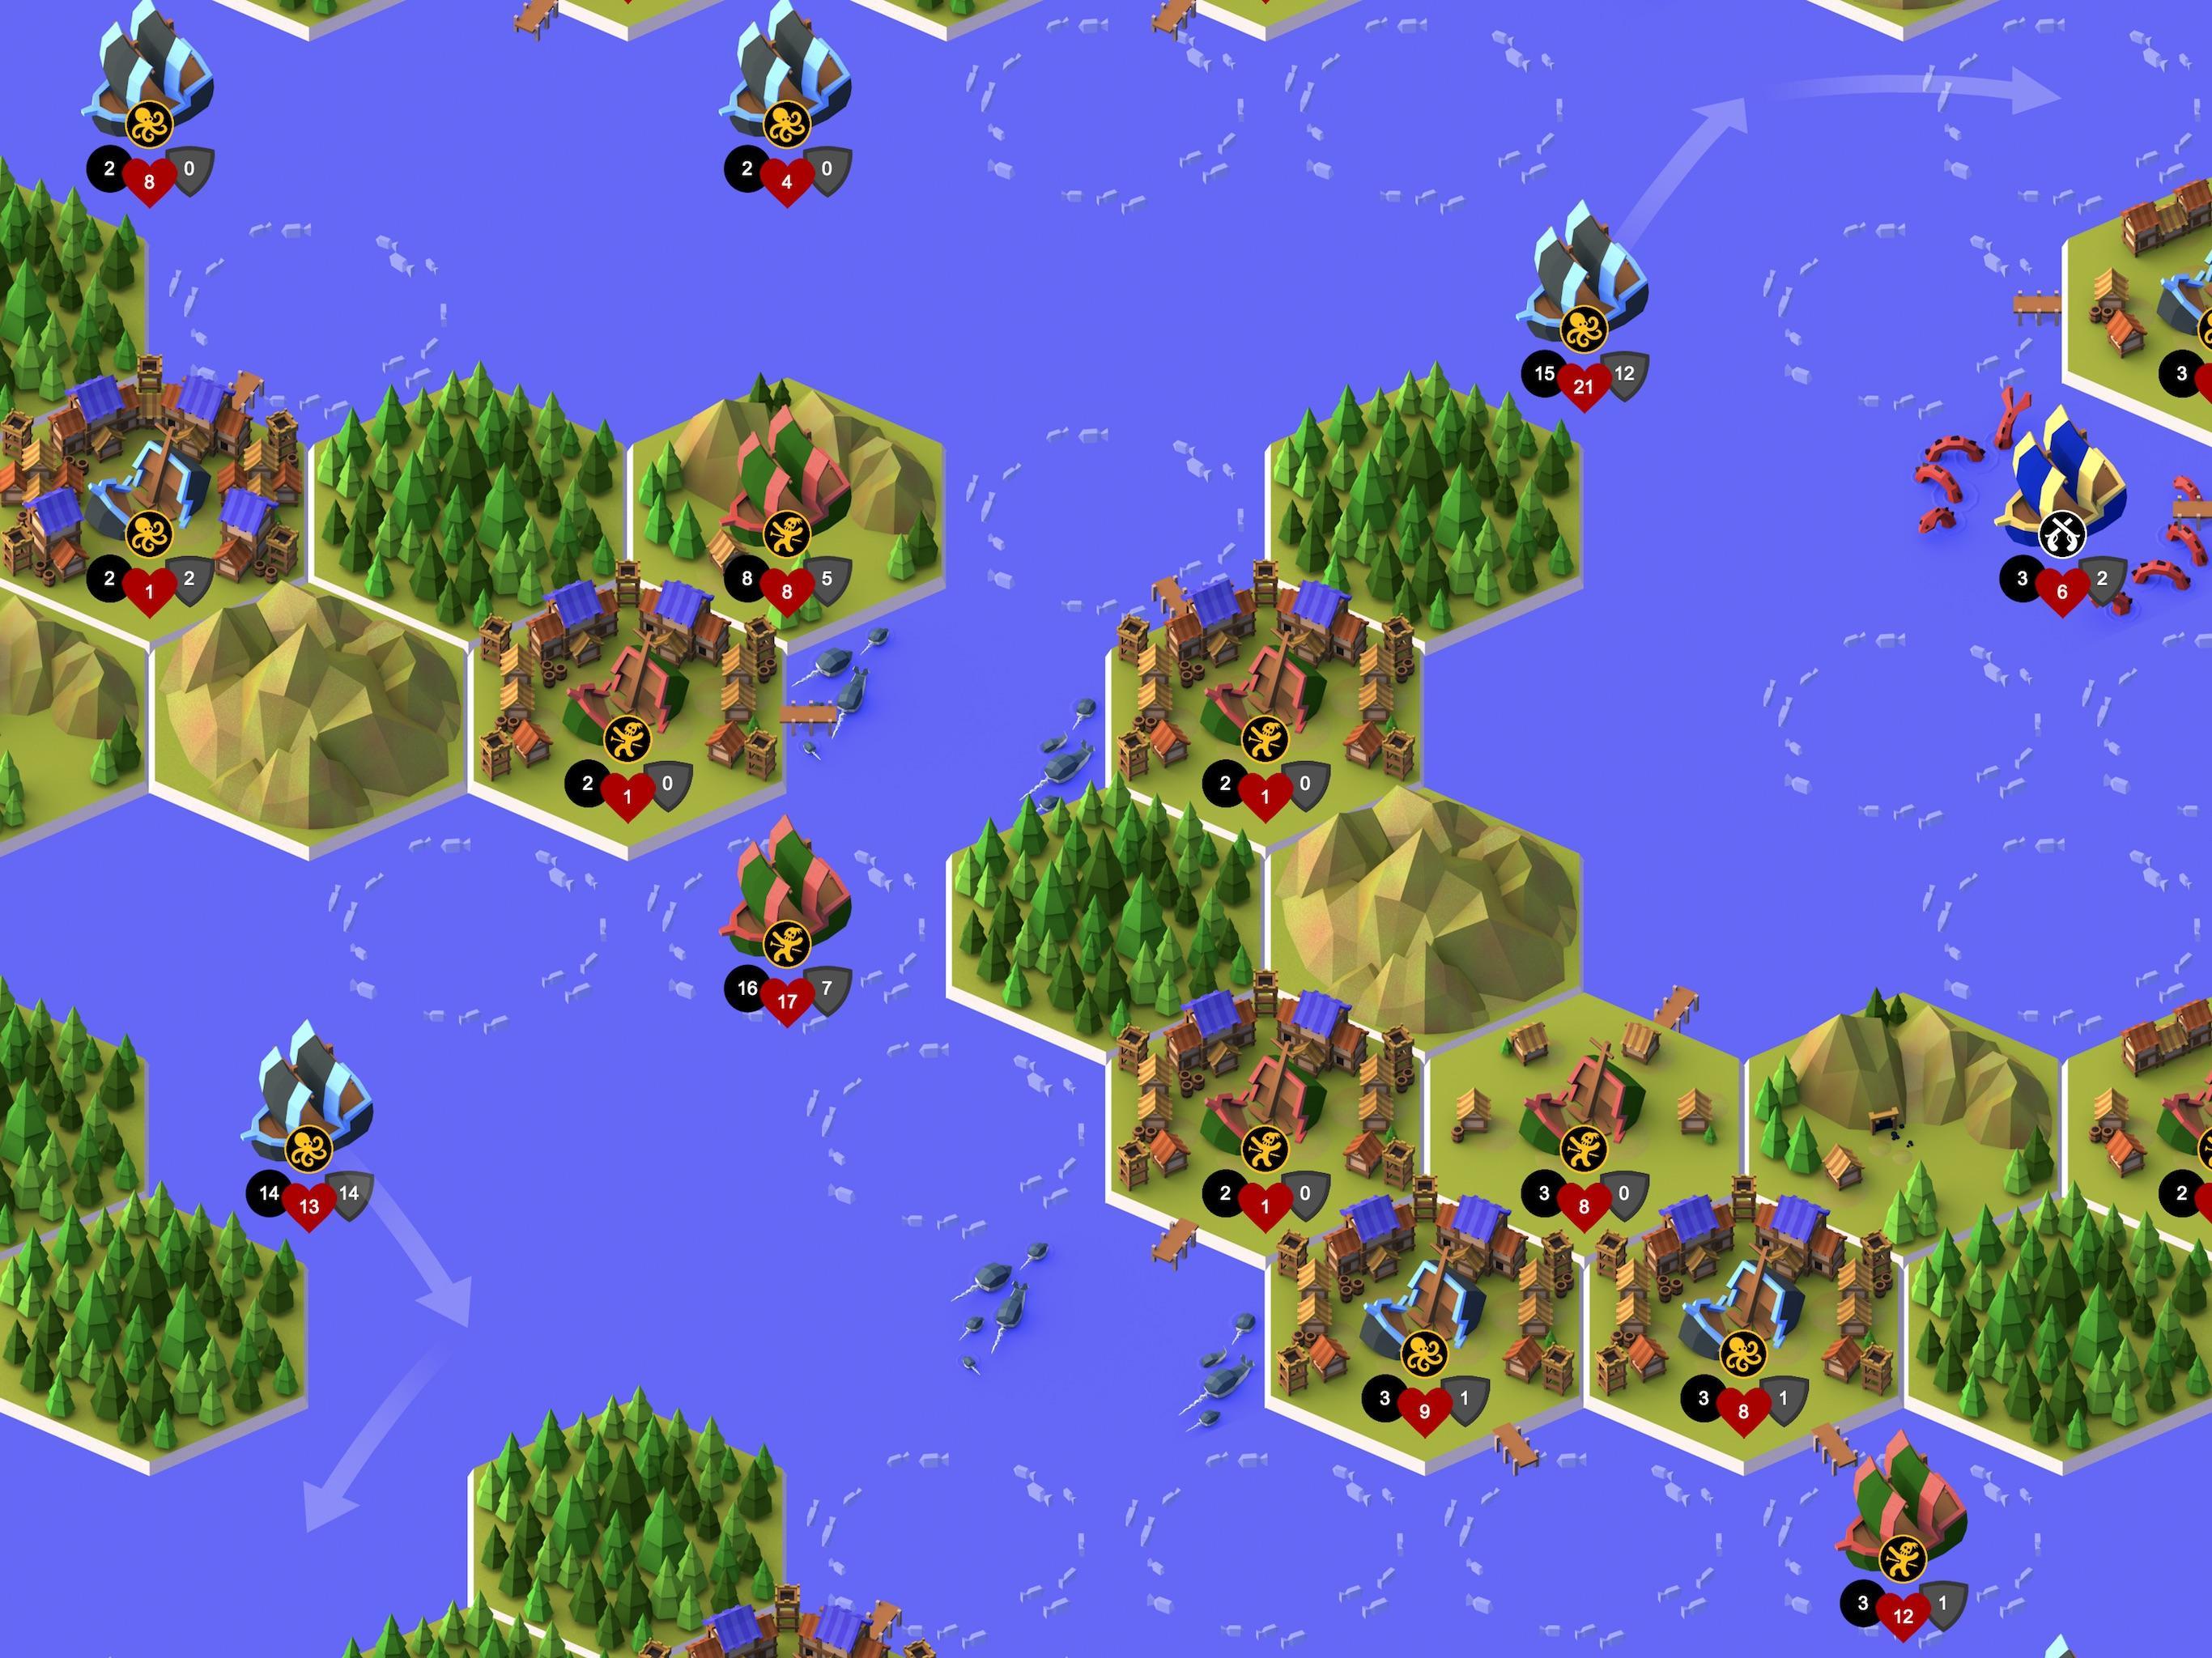 Buccaneers, Bounty & Boom! screenshot game